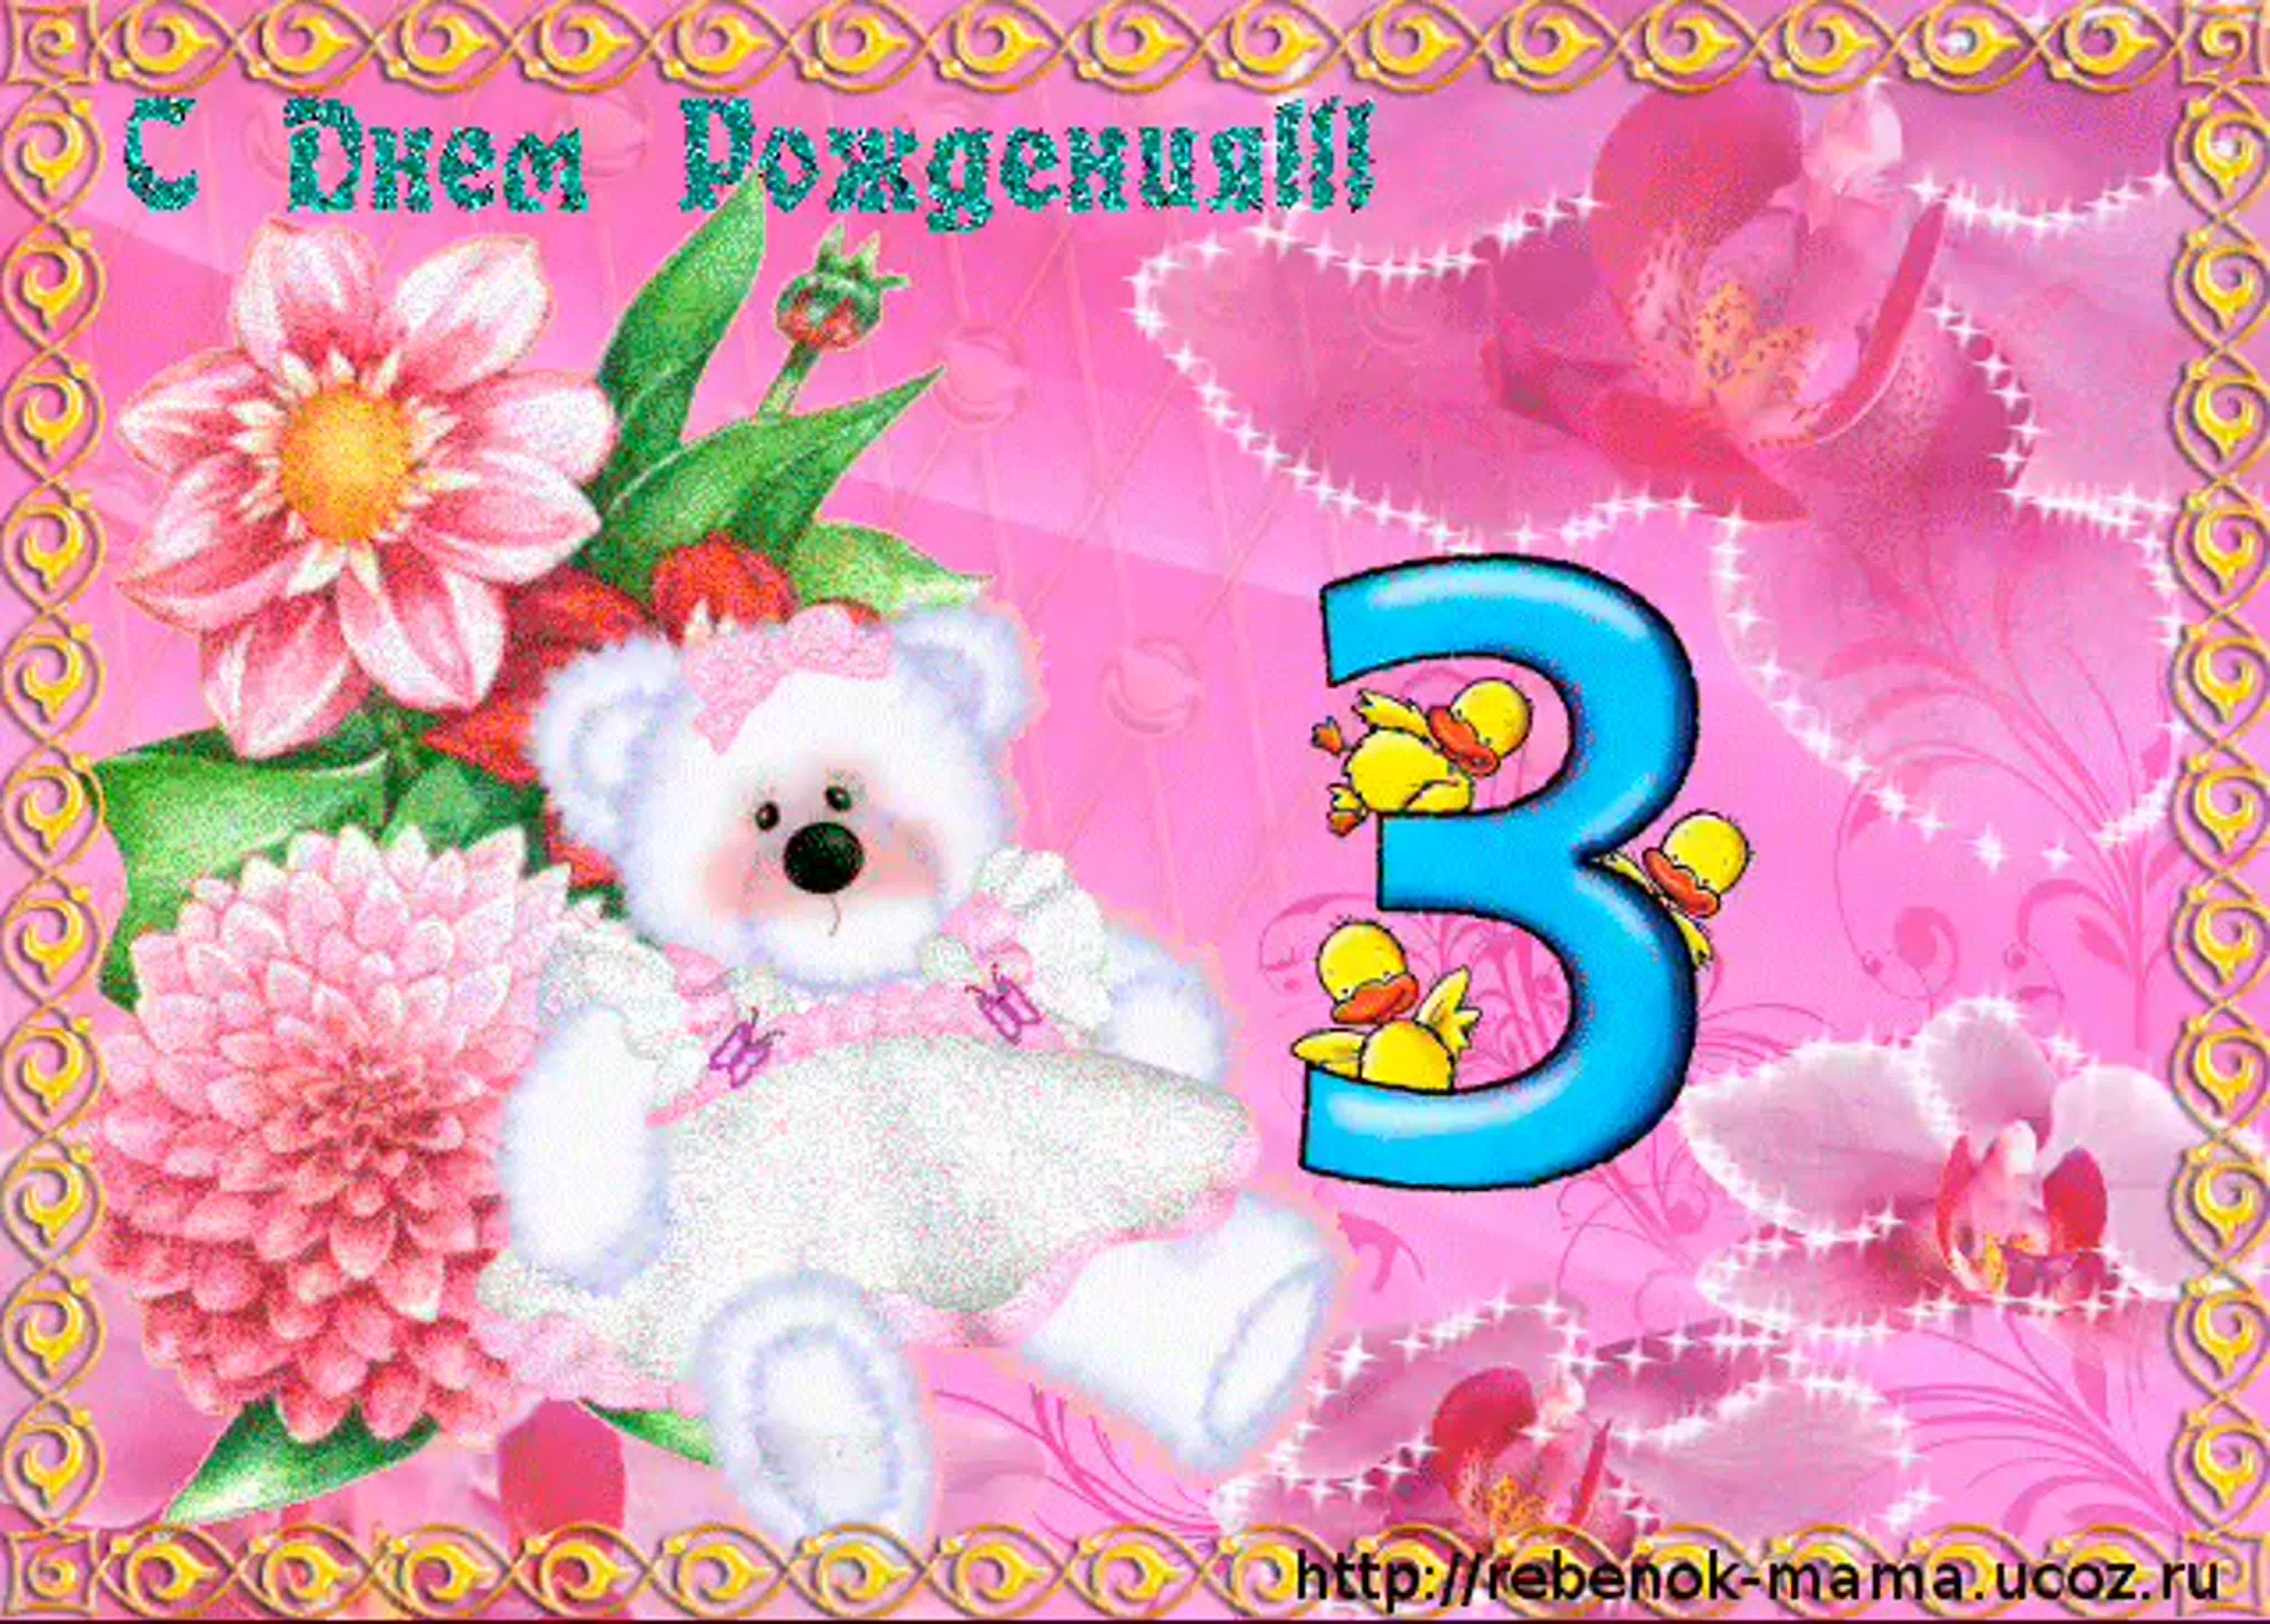 Тройной день рождения, тройной праздник, трижды УРА! - Блог «Курилка» - mountainline.ru